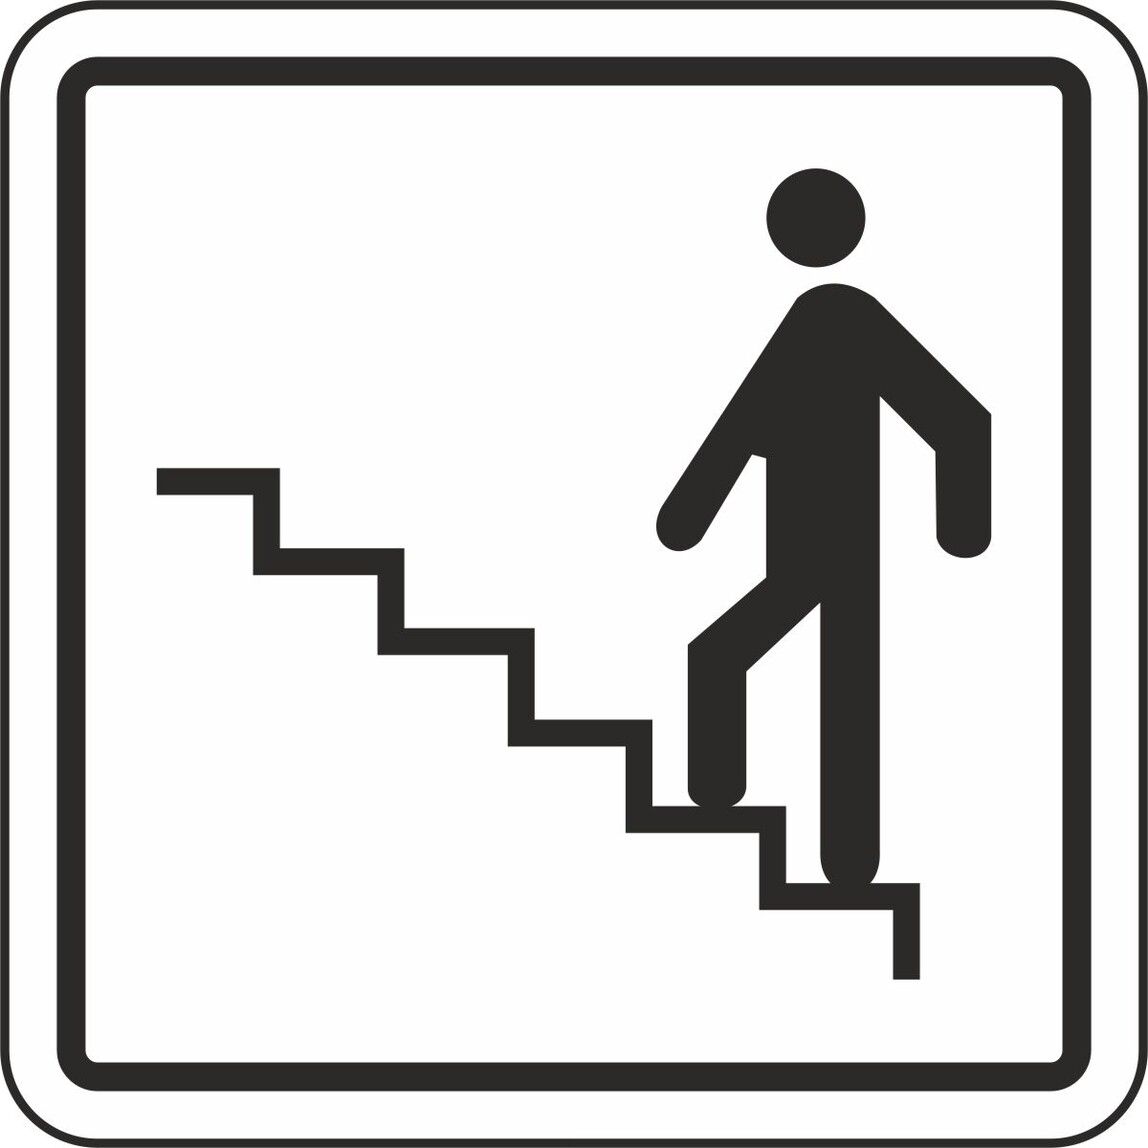    Extra Fix Uyarı Levhası Pvc Merdiven   